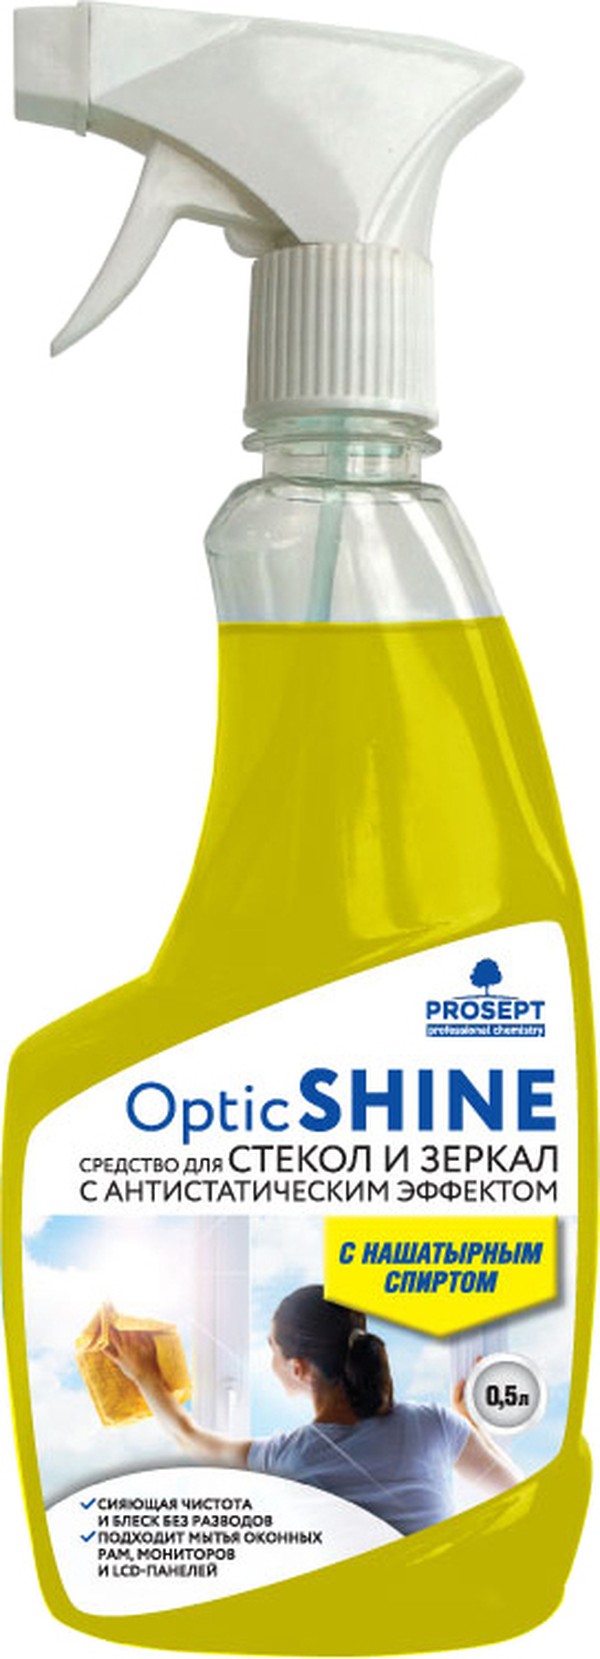 Очиститель для стекол Prosept Optic Shine 0,5 л